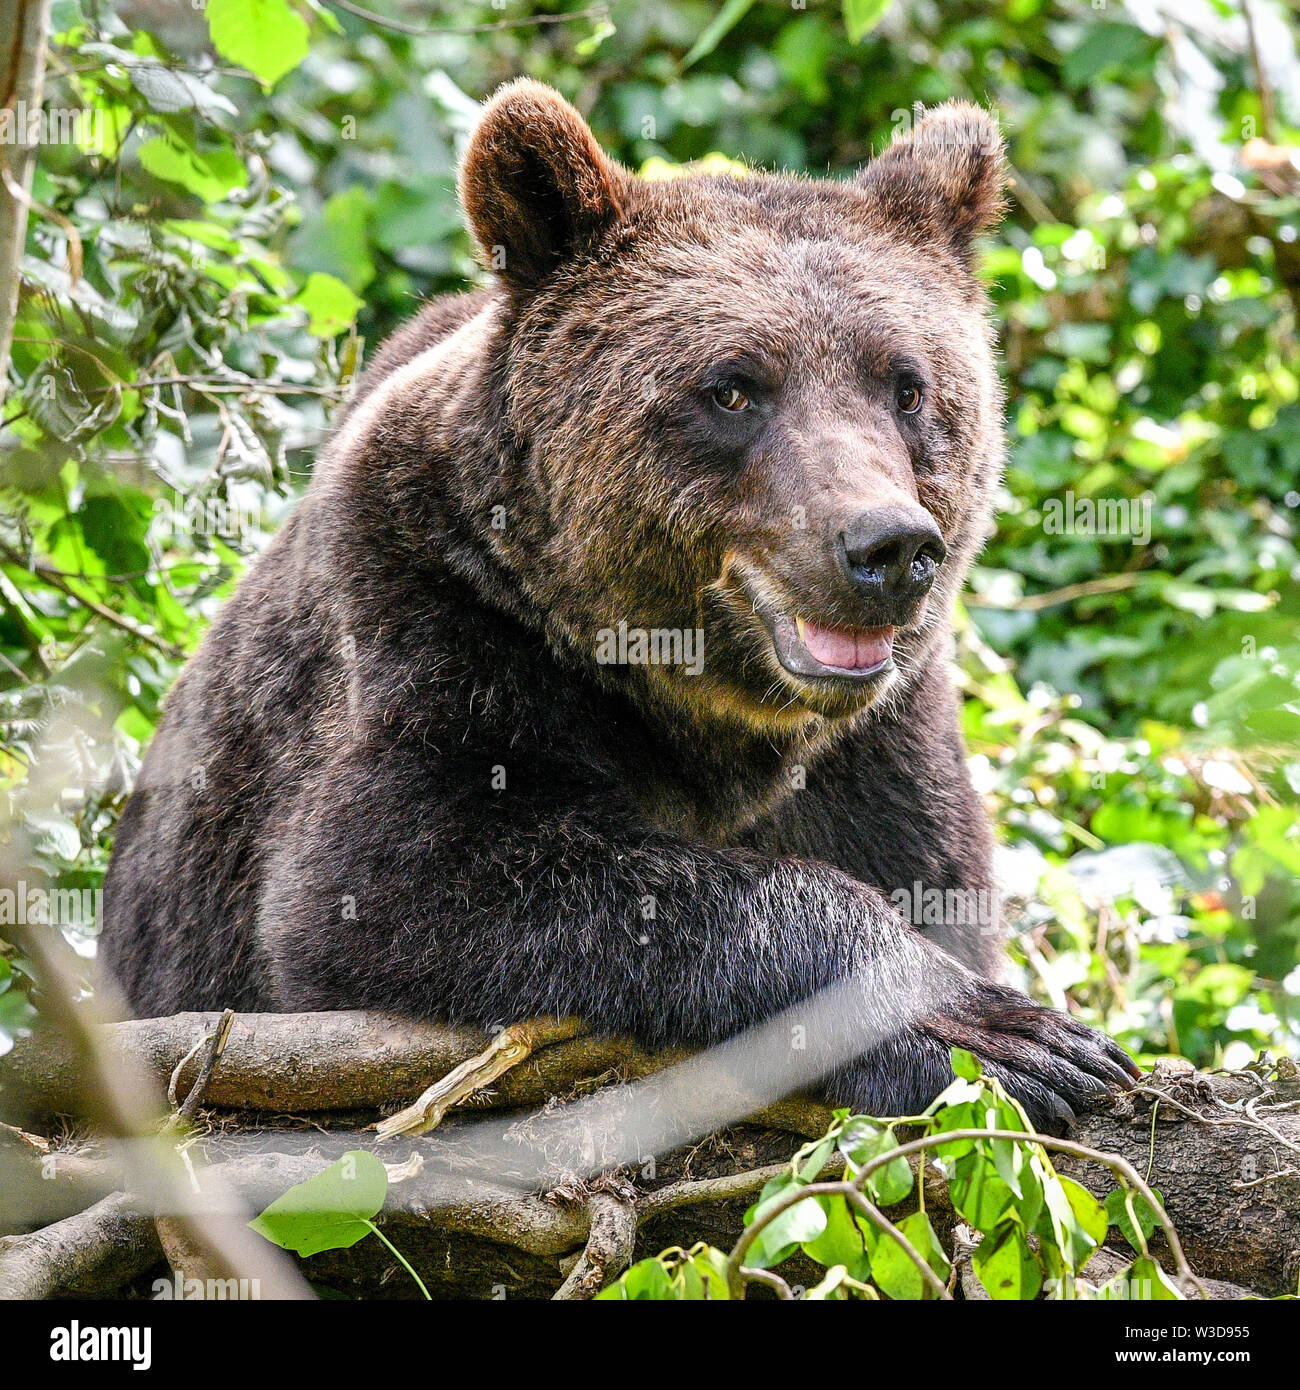 Embargo auf 0001 Dienstag, 16. Juli ein Europäischer Braunbär setzt sich in größten Braun in Großbritannien tragen Ausstellung bei wilden Ort Projekt, South Gloucestershire, wo die Bären, die sich in einem riesigen neuen Wald Lebensraum sind, neben der Wölfe, Luchse und Wolverine zu leben, so wie sie vor Tausenden von Jahren getan haben würde. Tragen Holz ist für die Öffentlichkeit am 25. Juli zu öffnen. Stockfoto